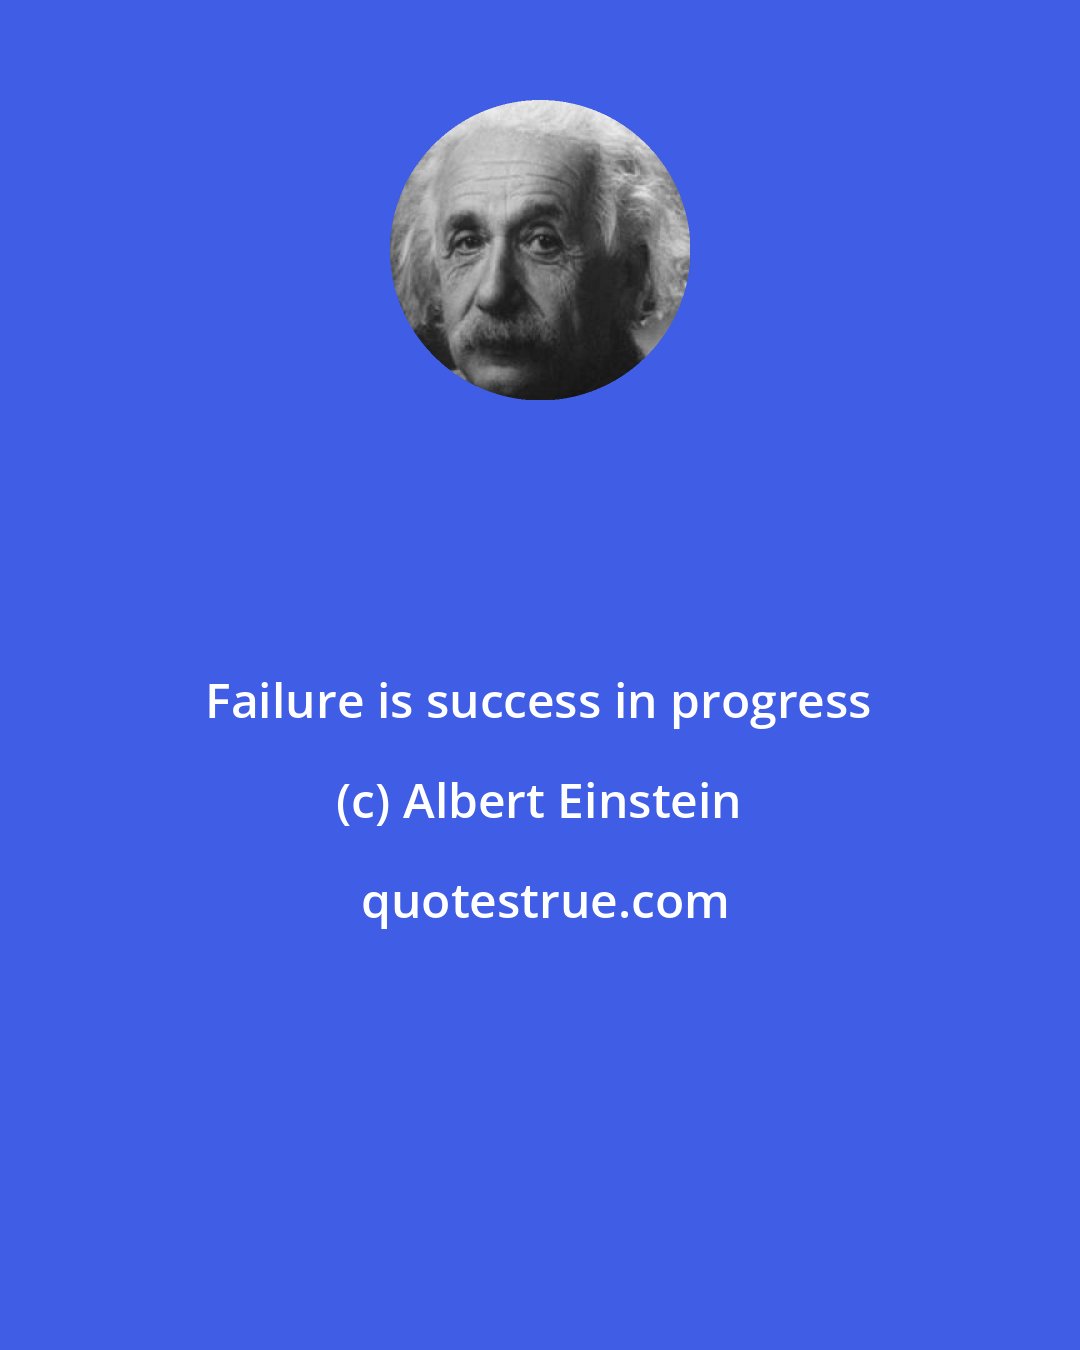 Albert Einstein: Failure is success in progress